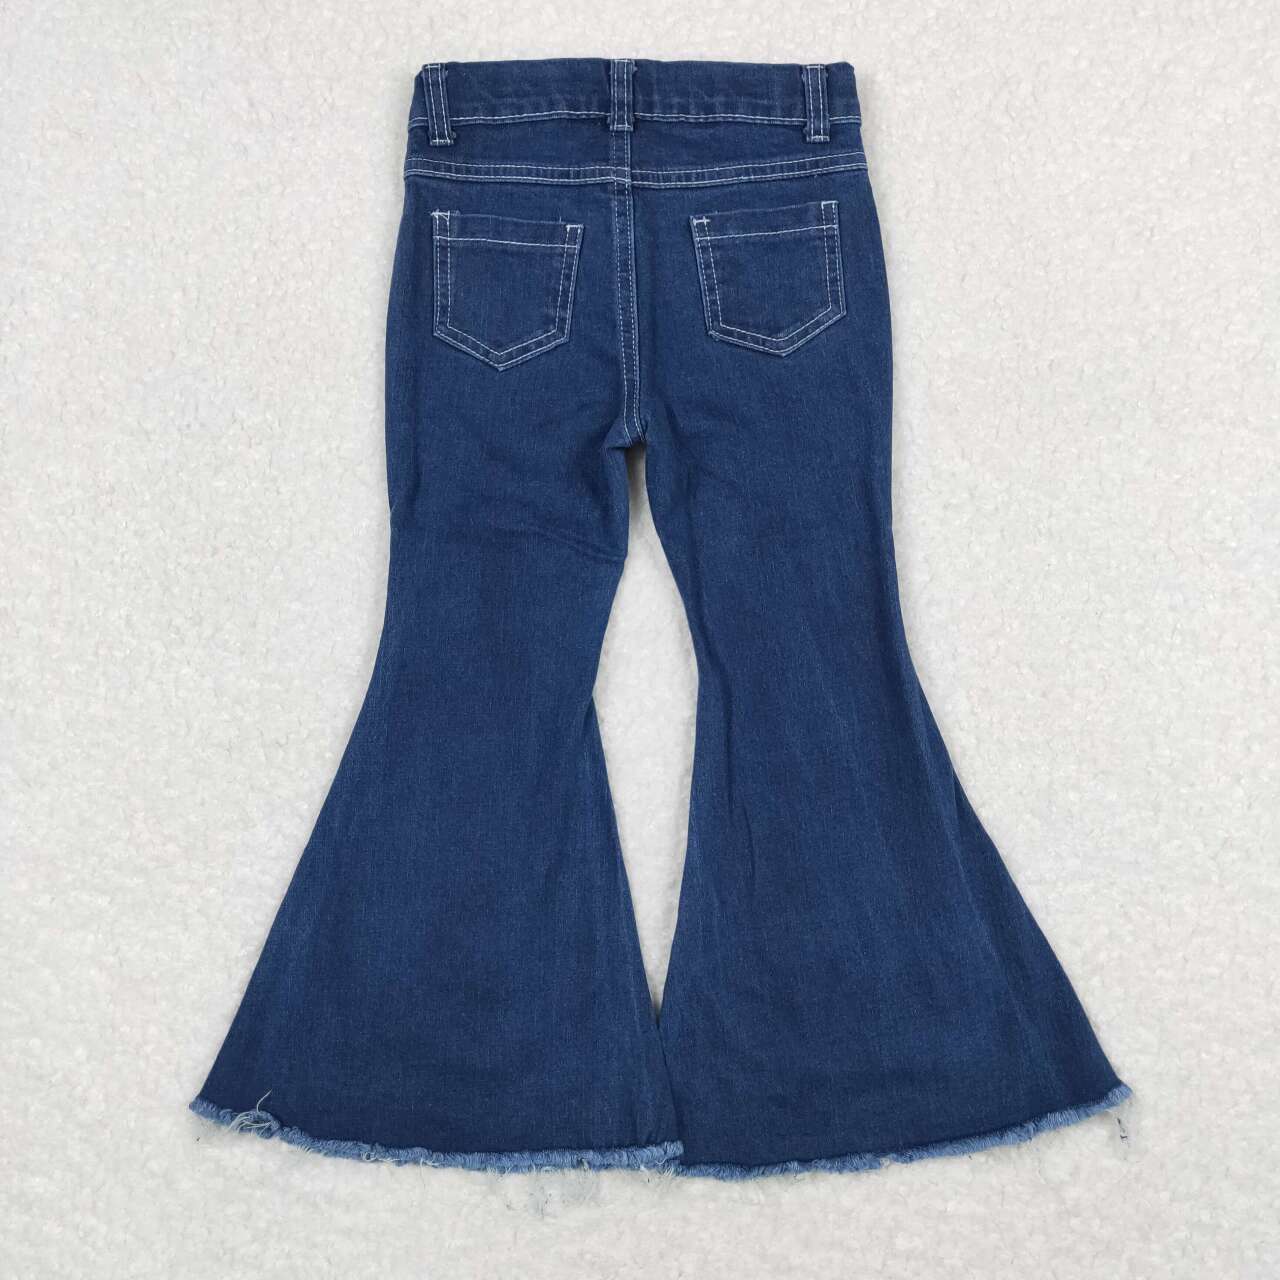 P0457   Blue Denim Bell Bottom Jeans Girls Pants